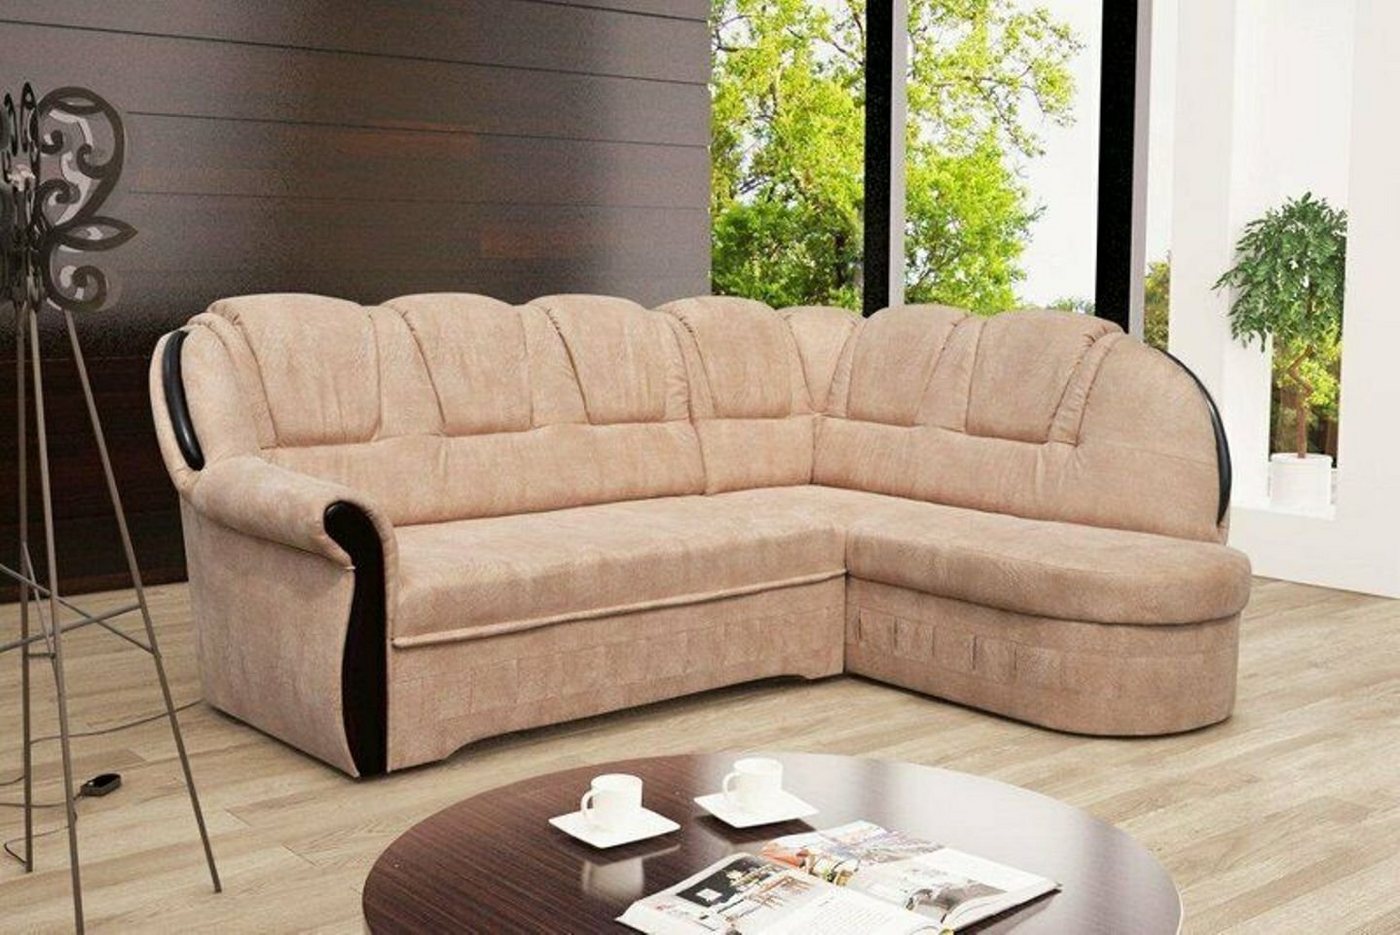 JVmoebel Ecksofa, Schlafsofa Ecksofa Sofa Couch Polster Eck Garnitur Sitz Sofas Textil von JVmoebel